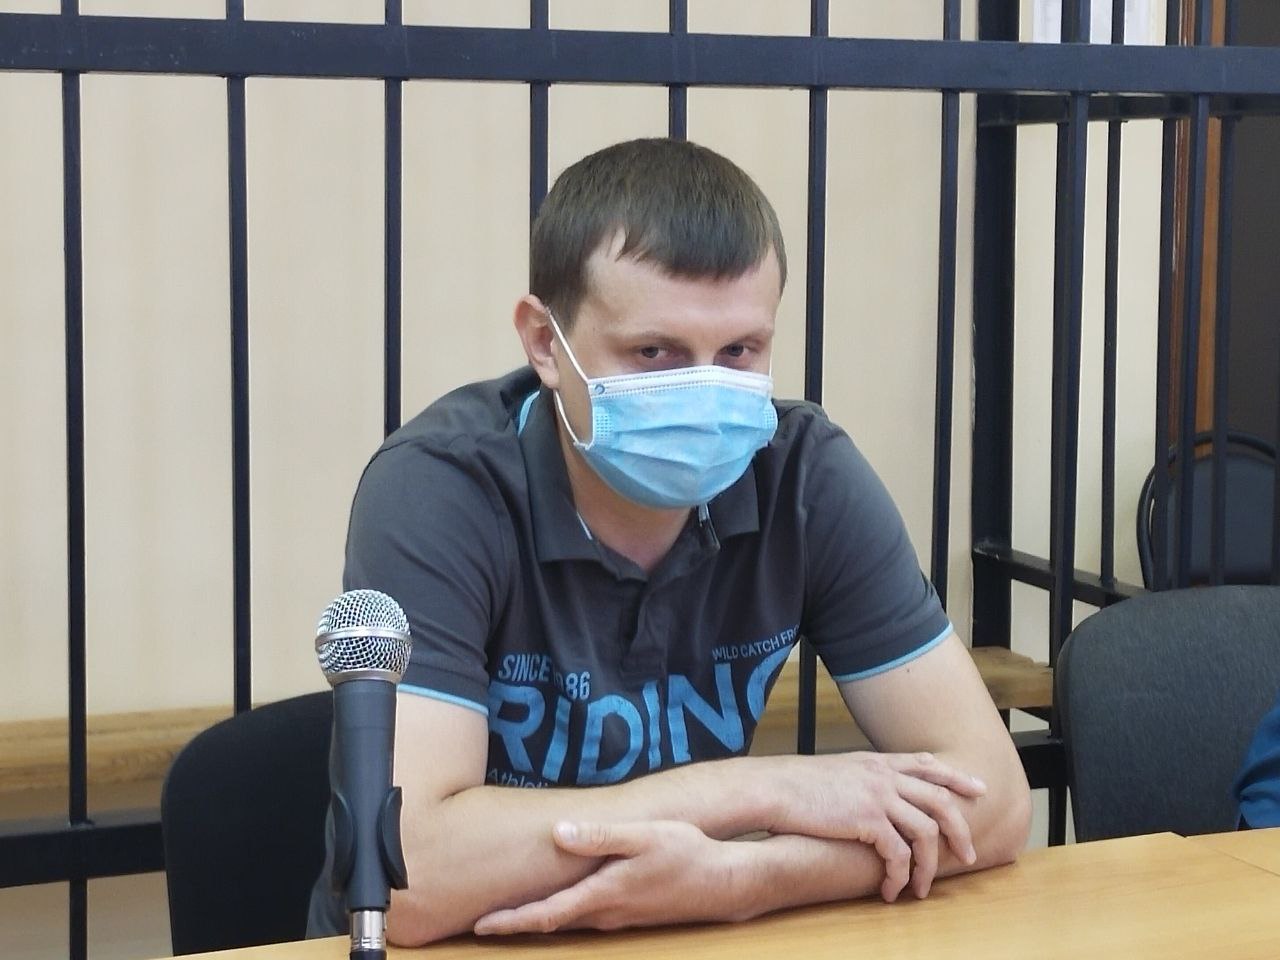 Бывшему сотруднику МЧС Павлу&nbsp;Тигееву отменили приговор в деле о пожаре, где погибли 7 человек.